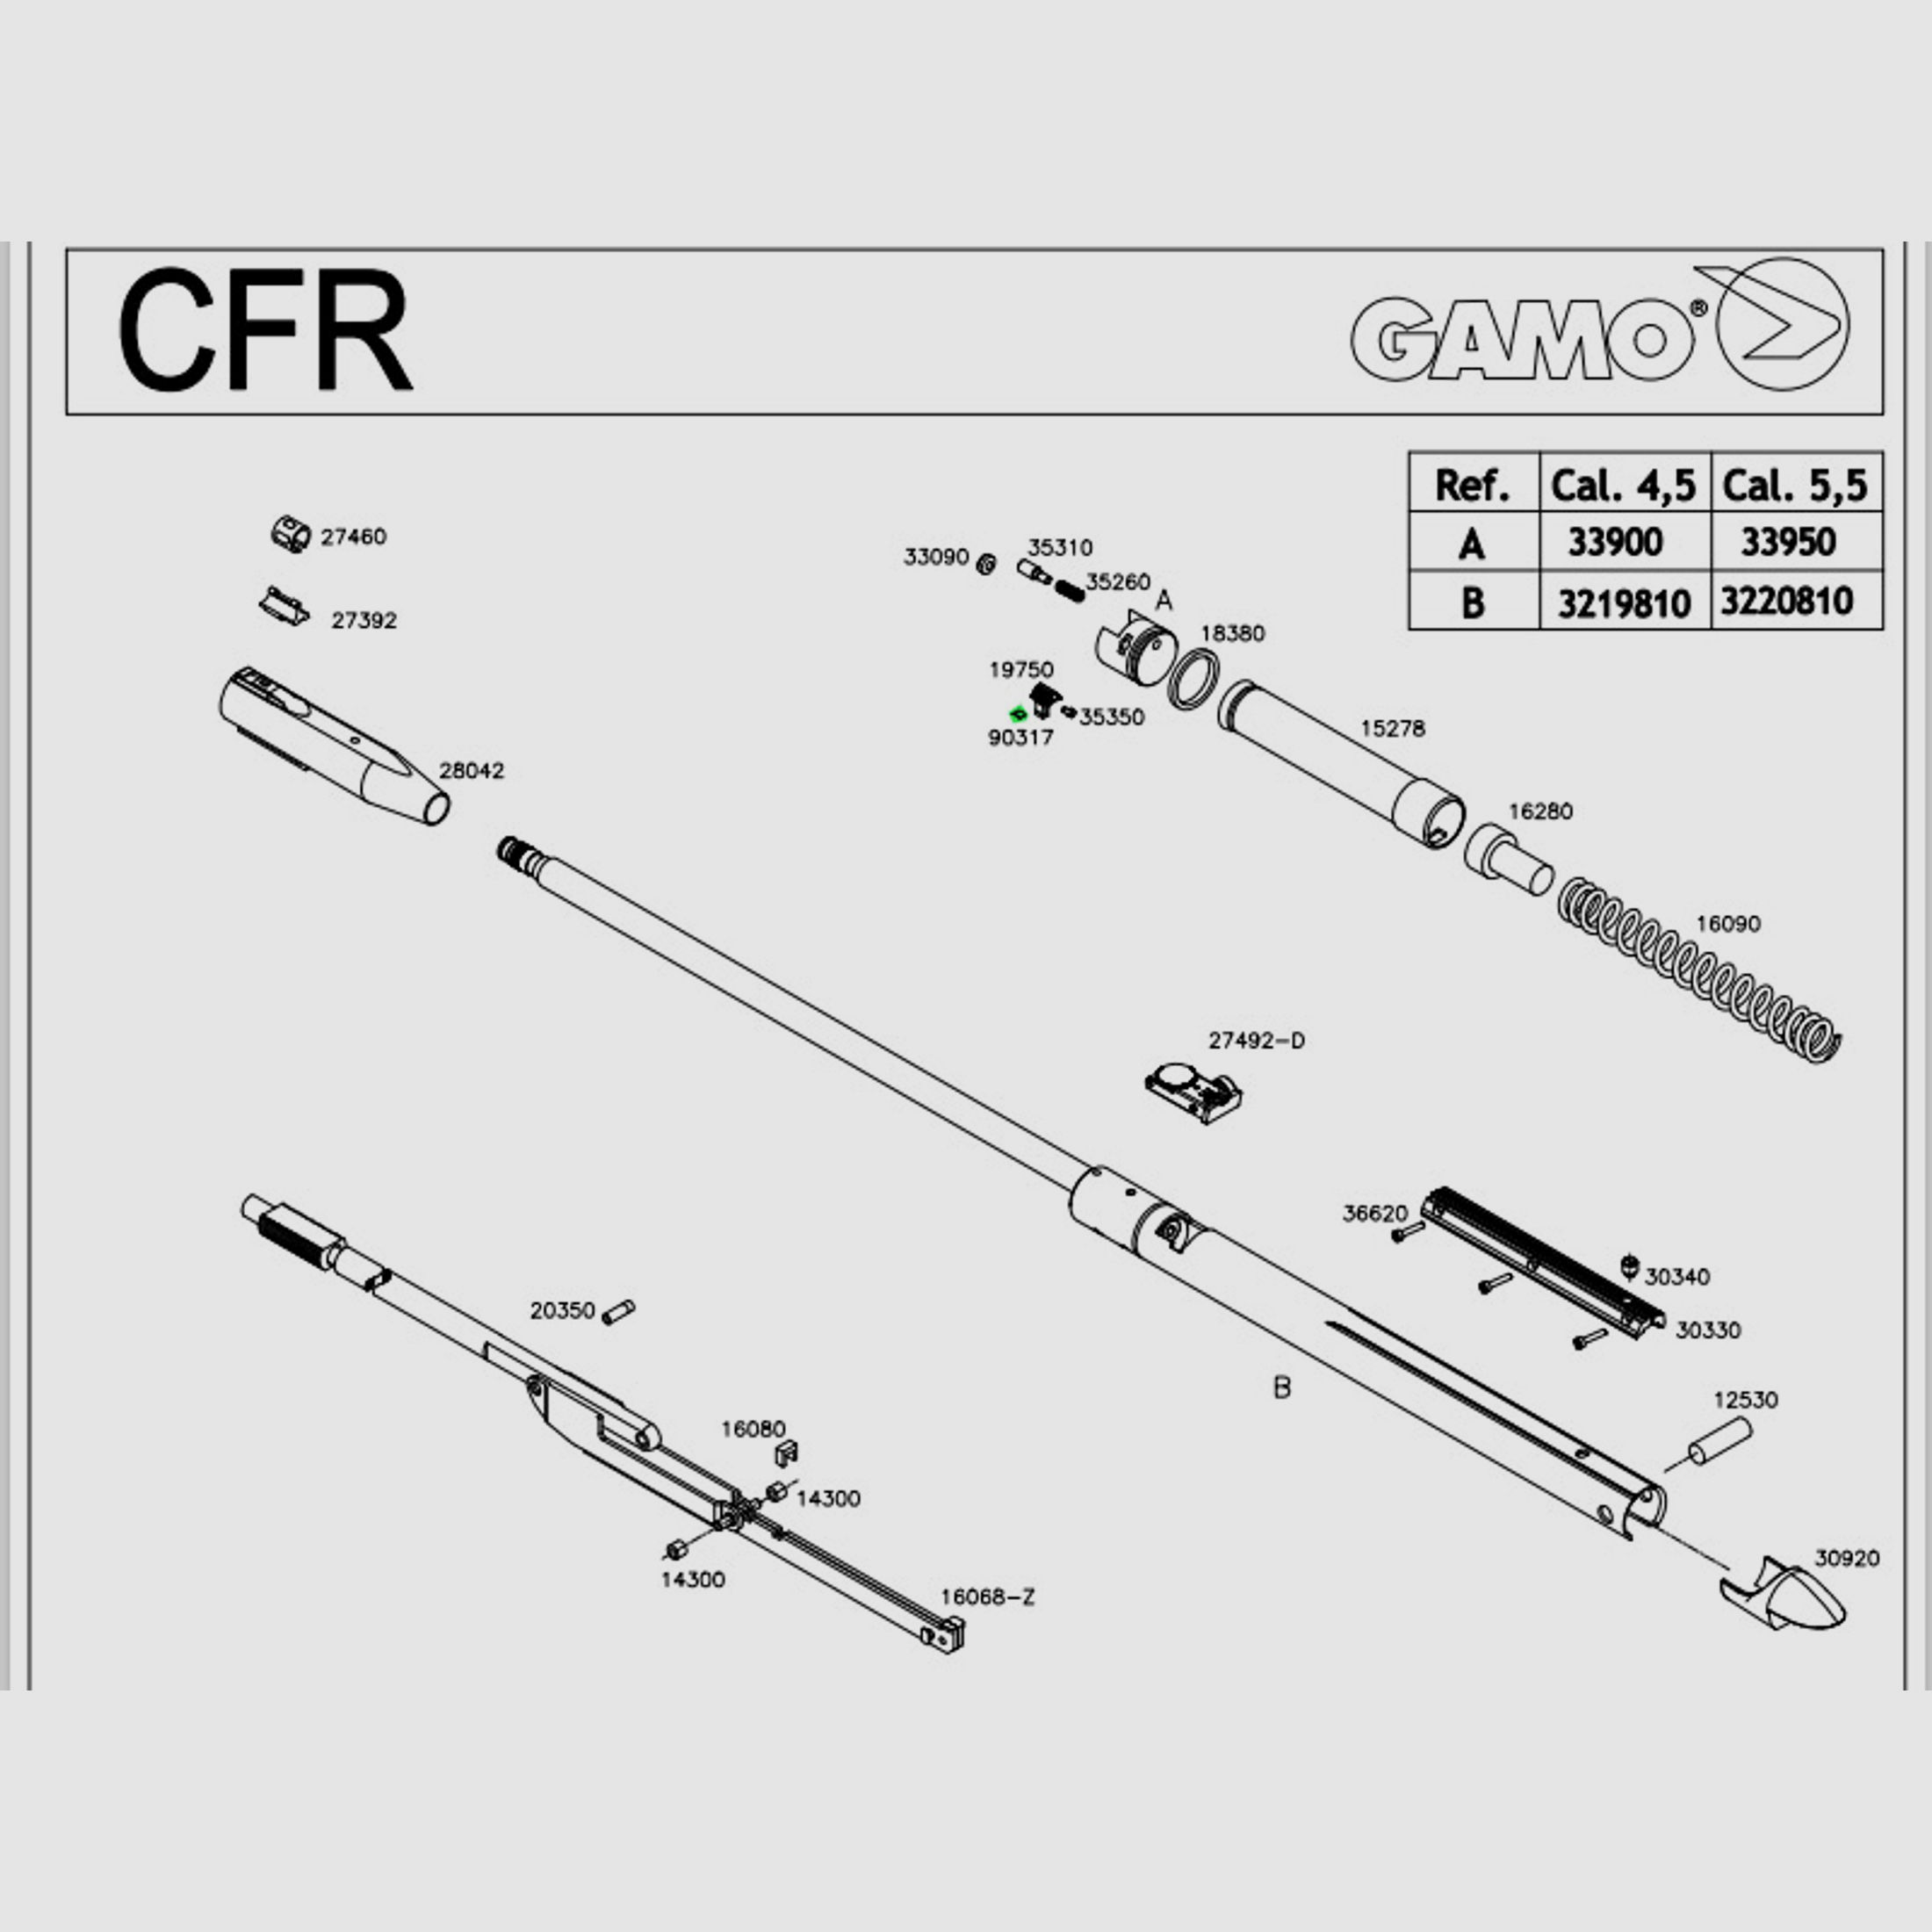 Feder fĂĽr Verschlusshebel fĂĽr Luftgewehre Gamo CFR CFX Modelle, Ersatzteil